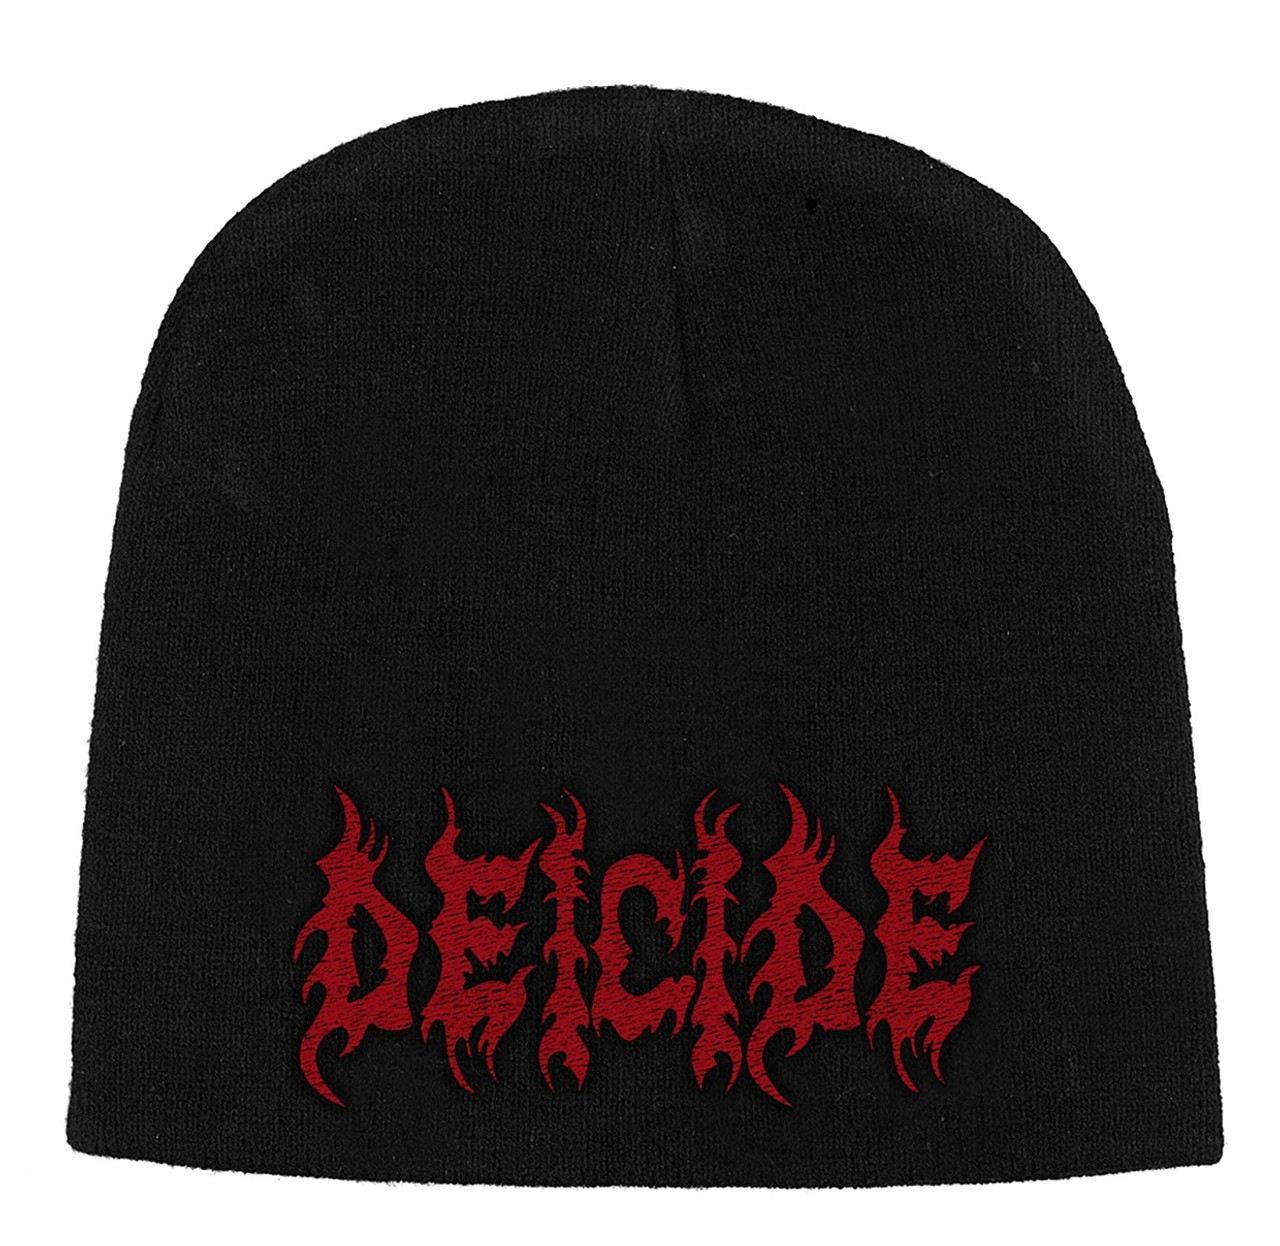 Deicide 'Logo' (Black) Beanie Hat